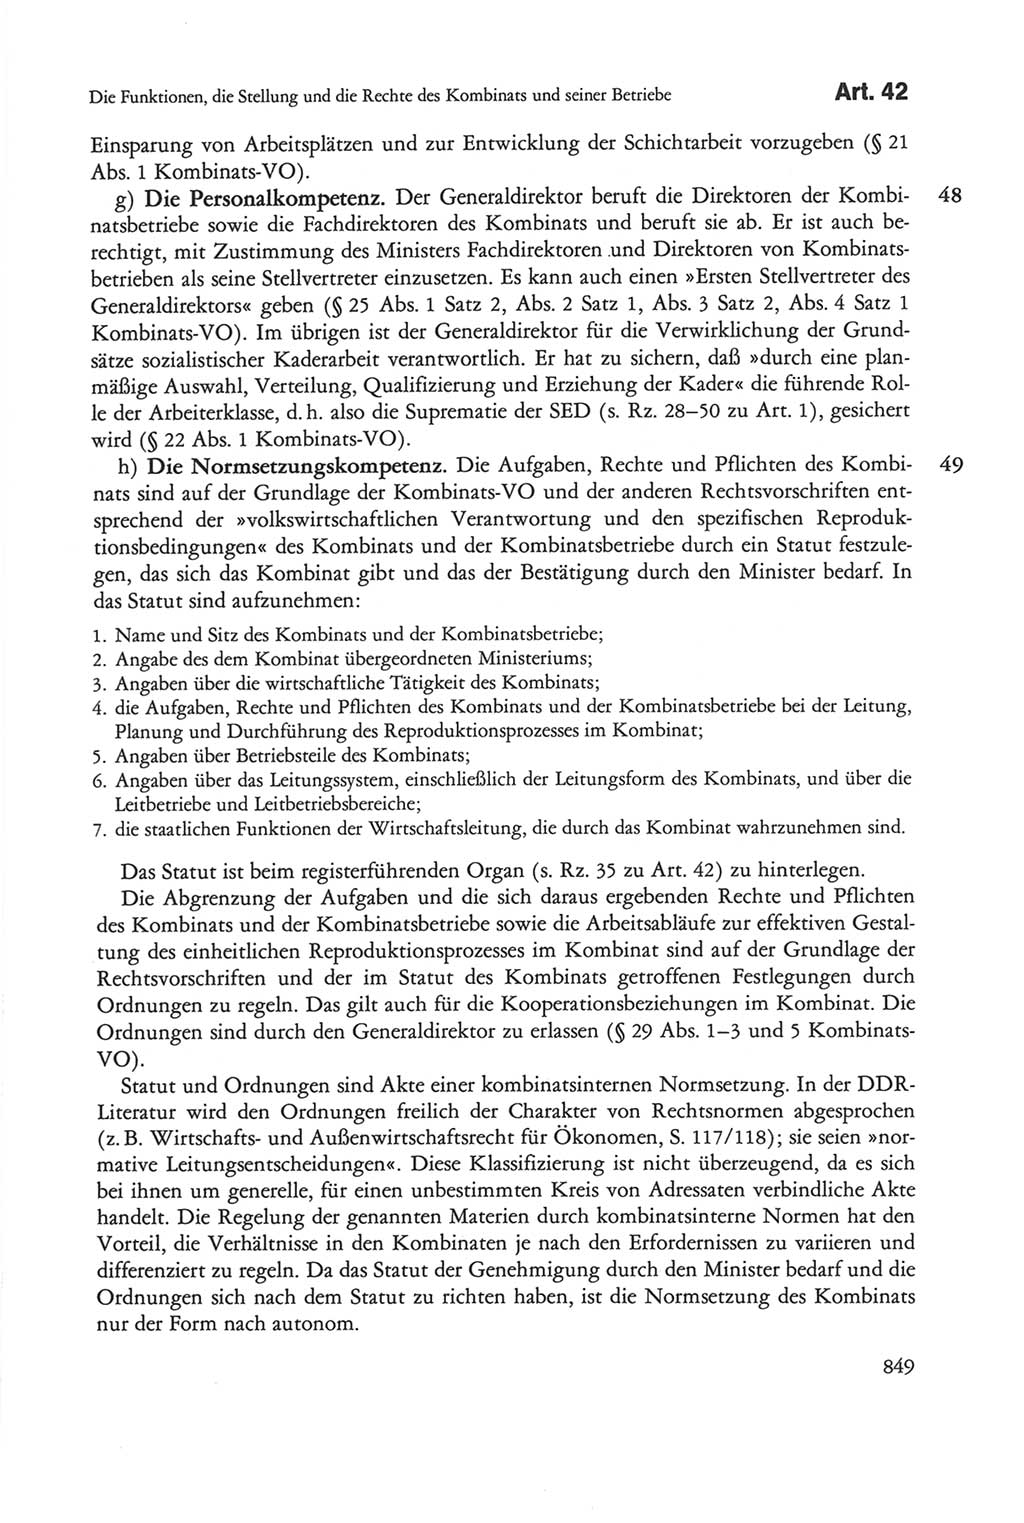 Die sozialistische Verfassung der Deutschen Demokratischen Republik (DDR), Kommentar 1982, Seite 849 (Soz. Verf. DDR Komm. 1982, S. 849)